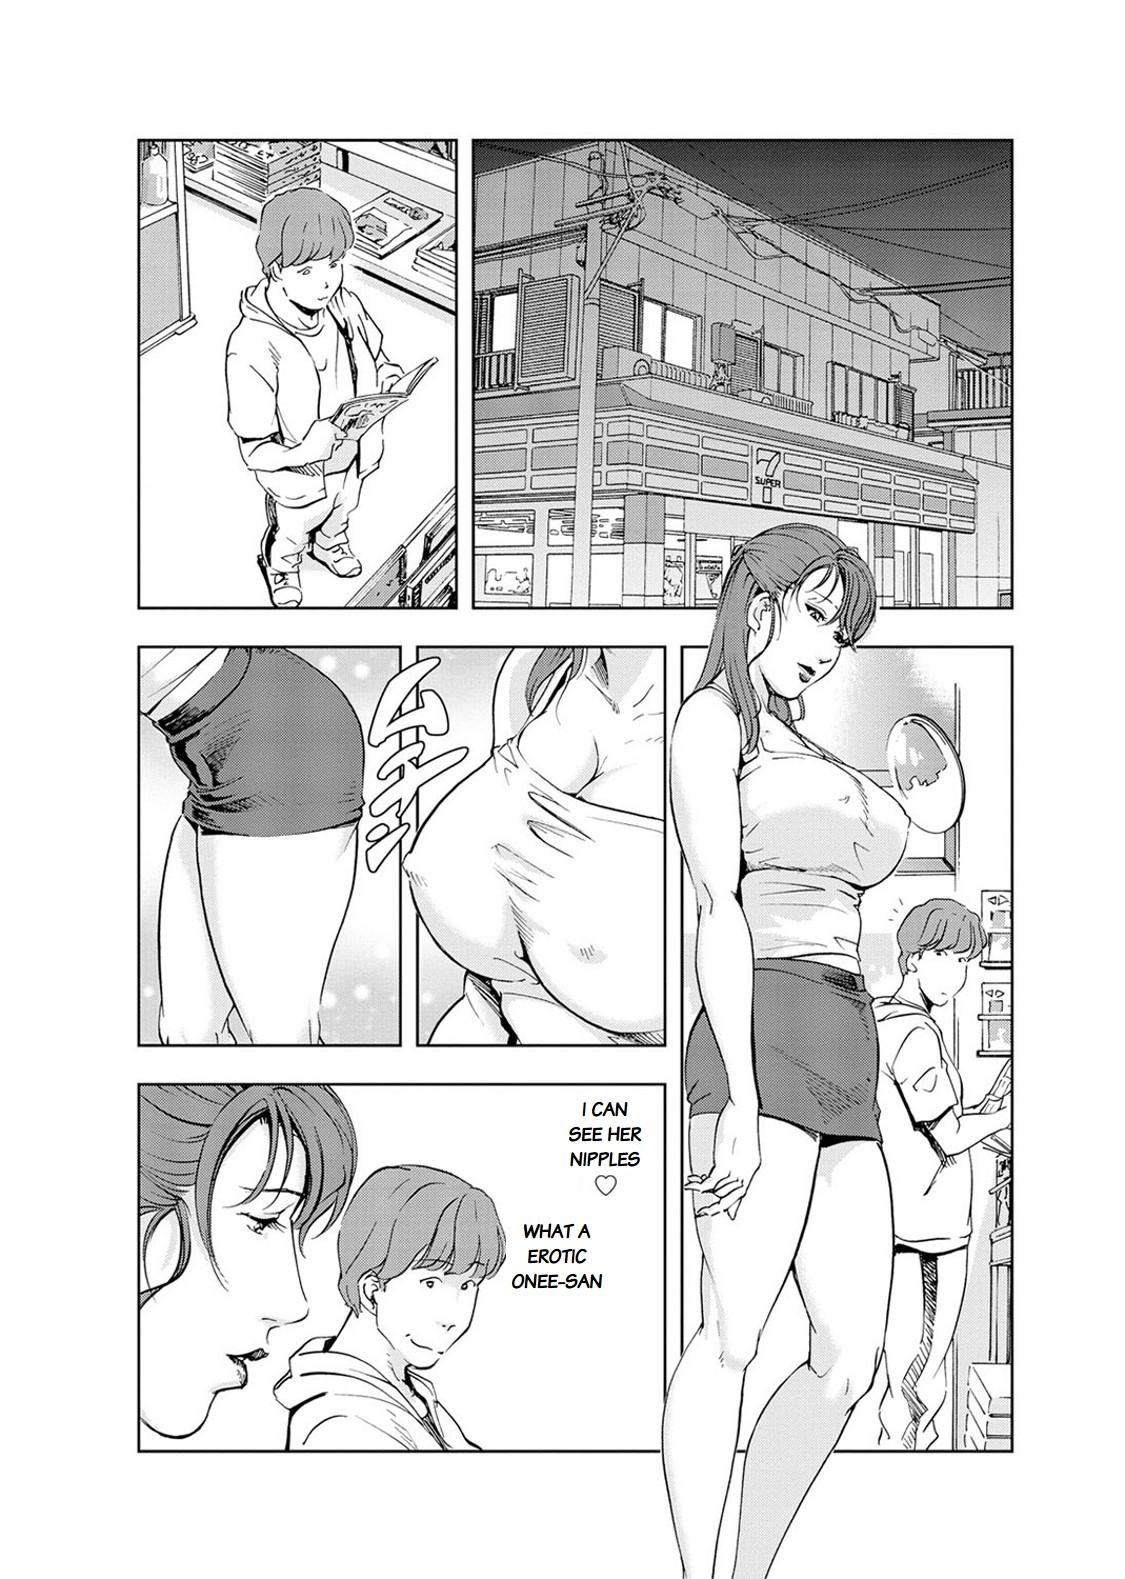 Nikuhisyo Yukiko chapter 20 9